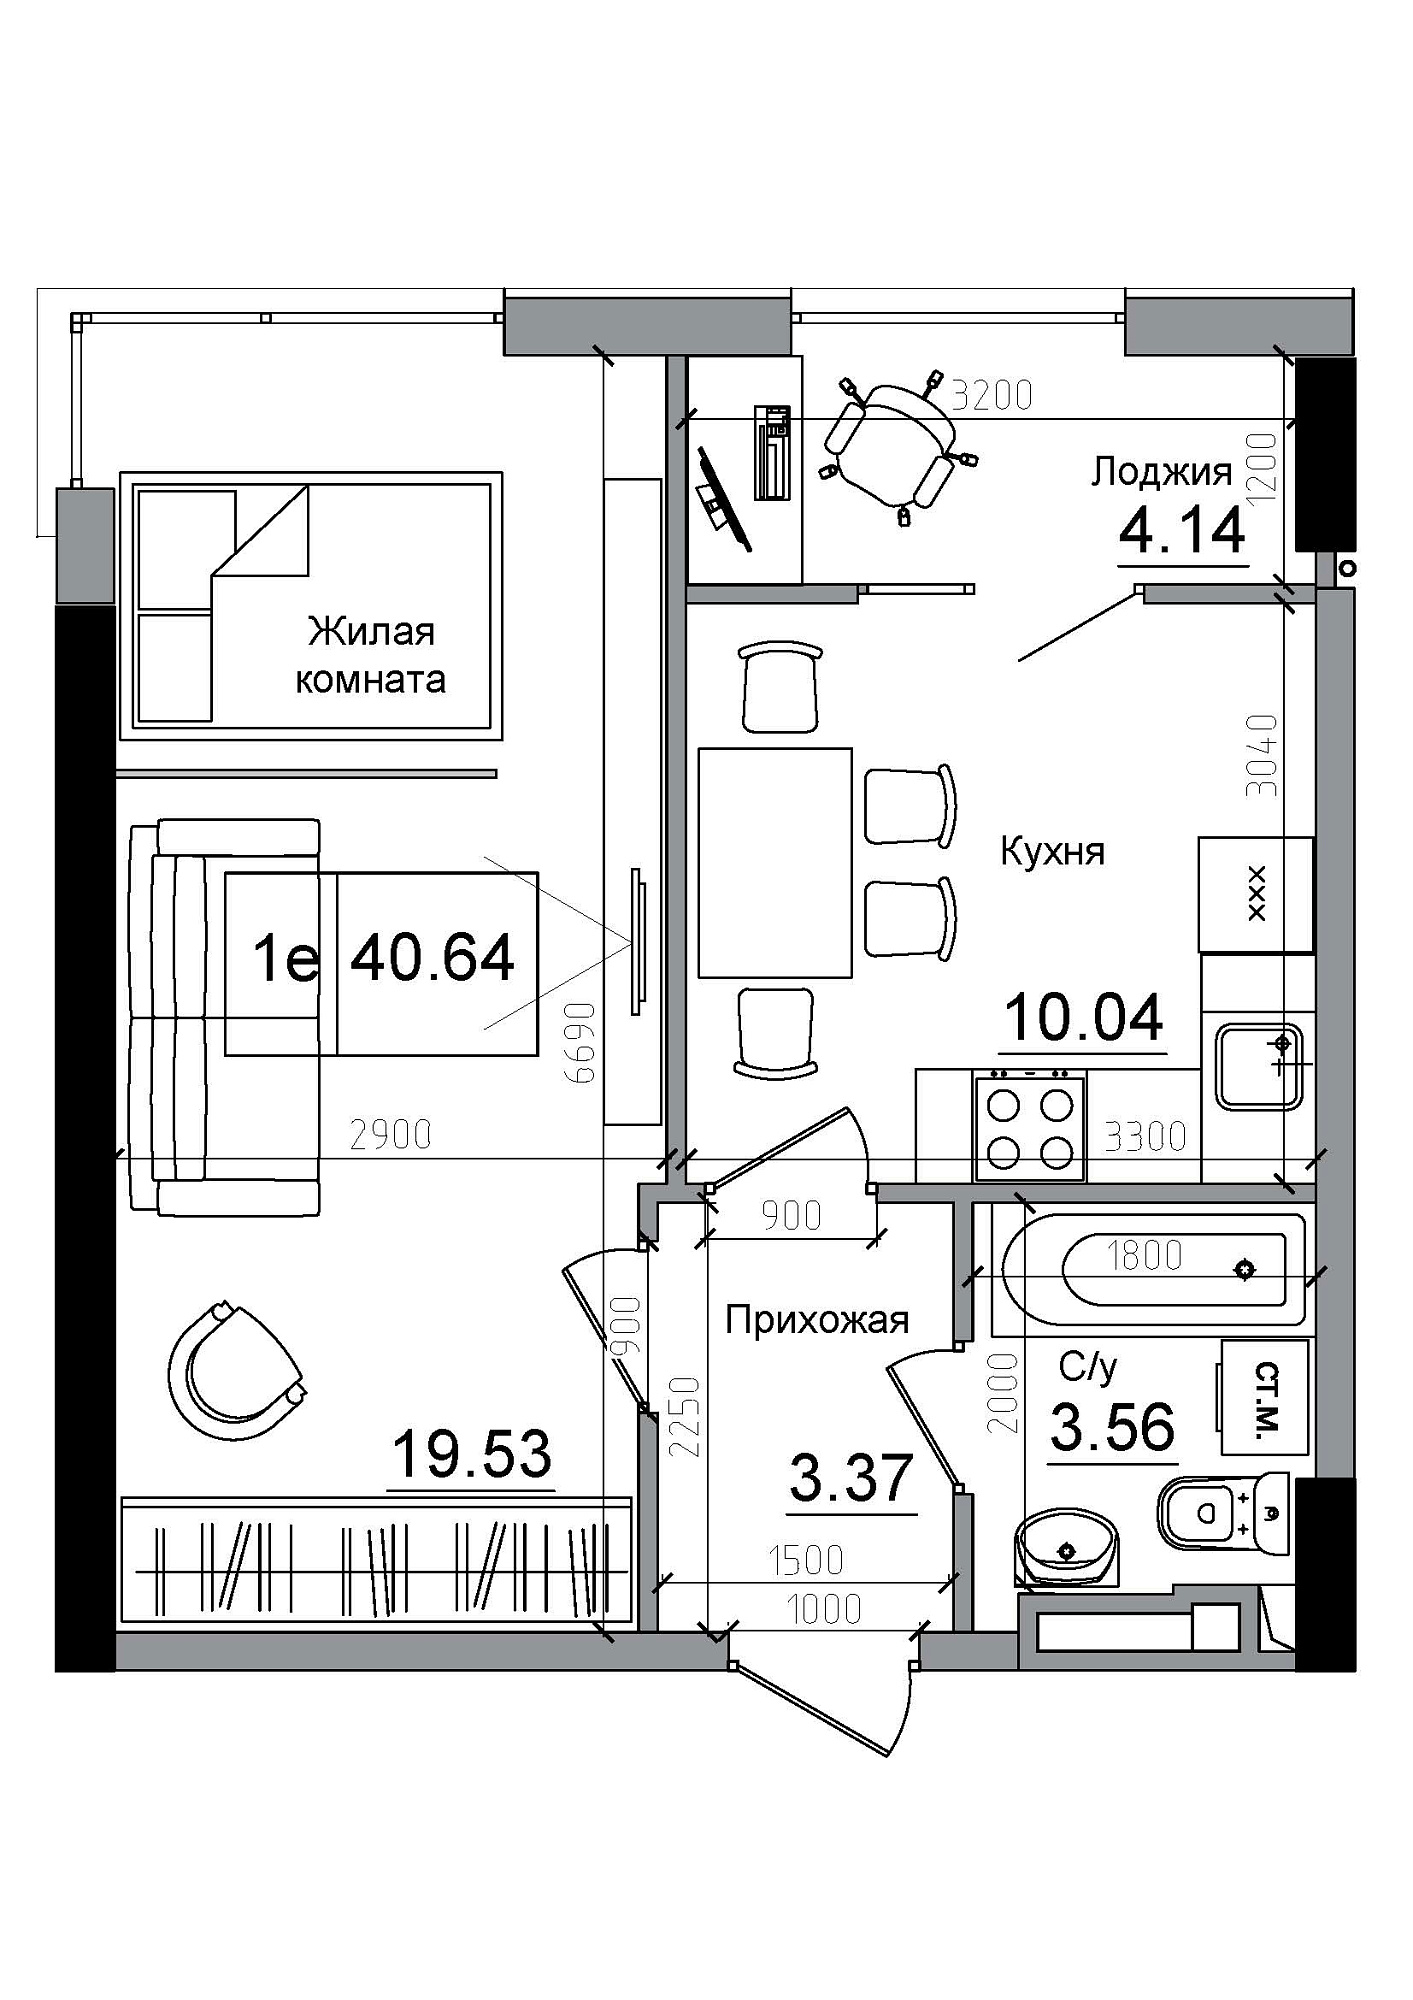 Планировка 1-к квартира площей 40.64м2, AB-12-03/00006.